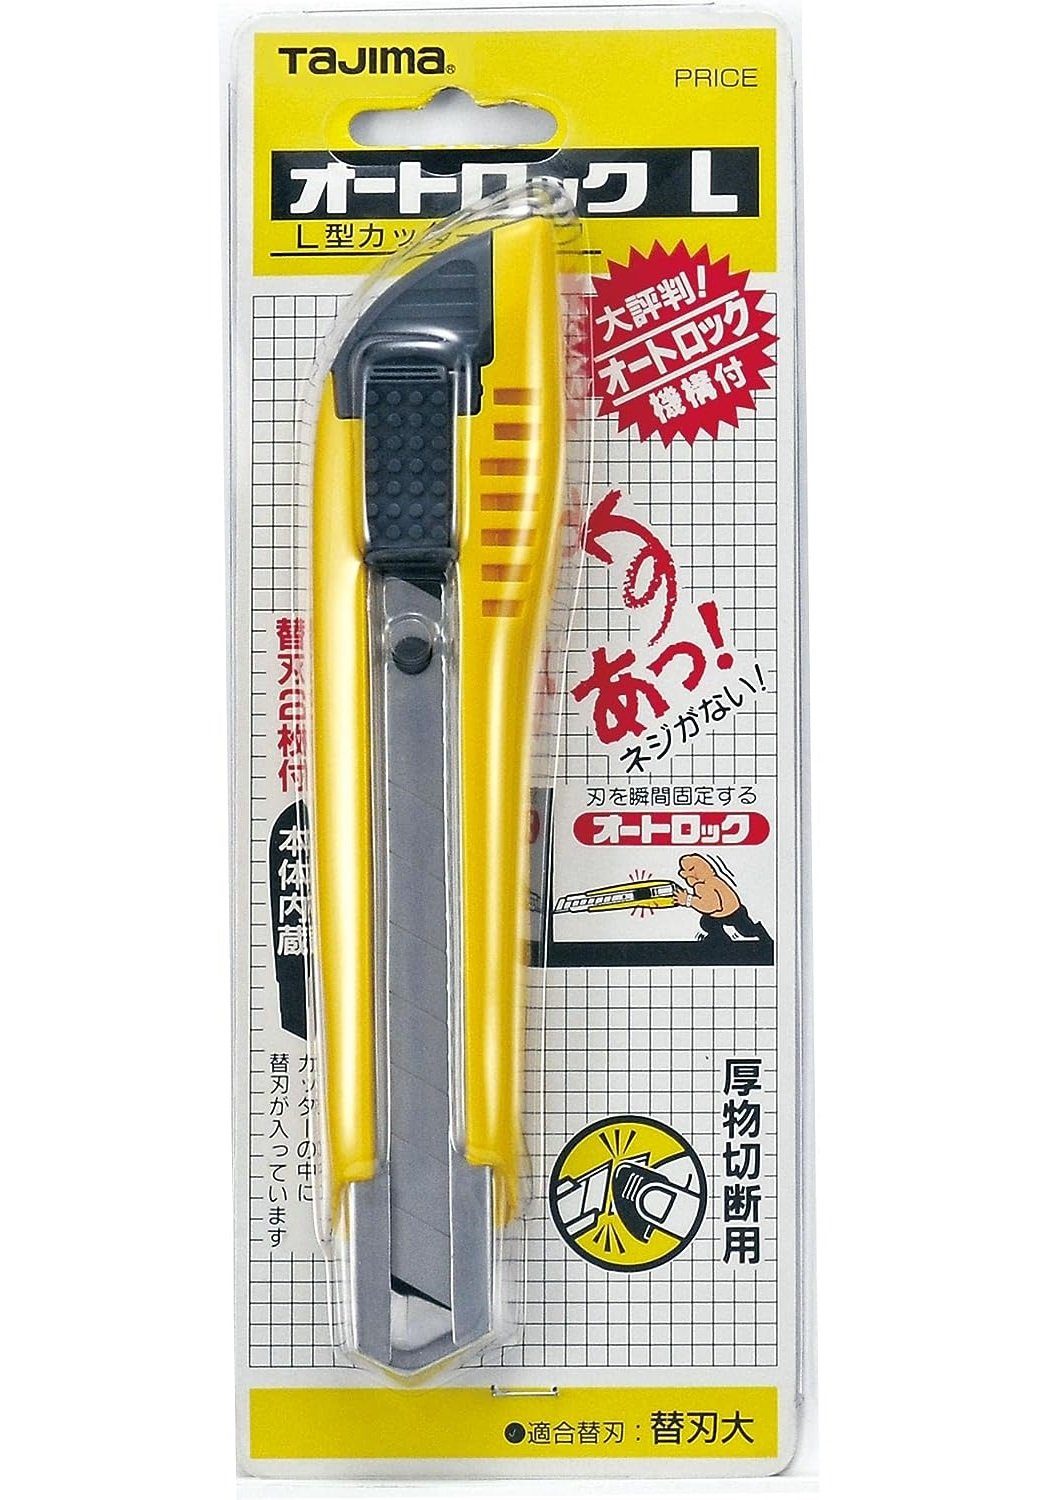 Tajima Teppichmesser Automatischer-Cutter mm ergonomischer Griff 18 3 Klingen gelb